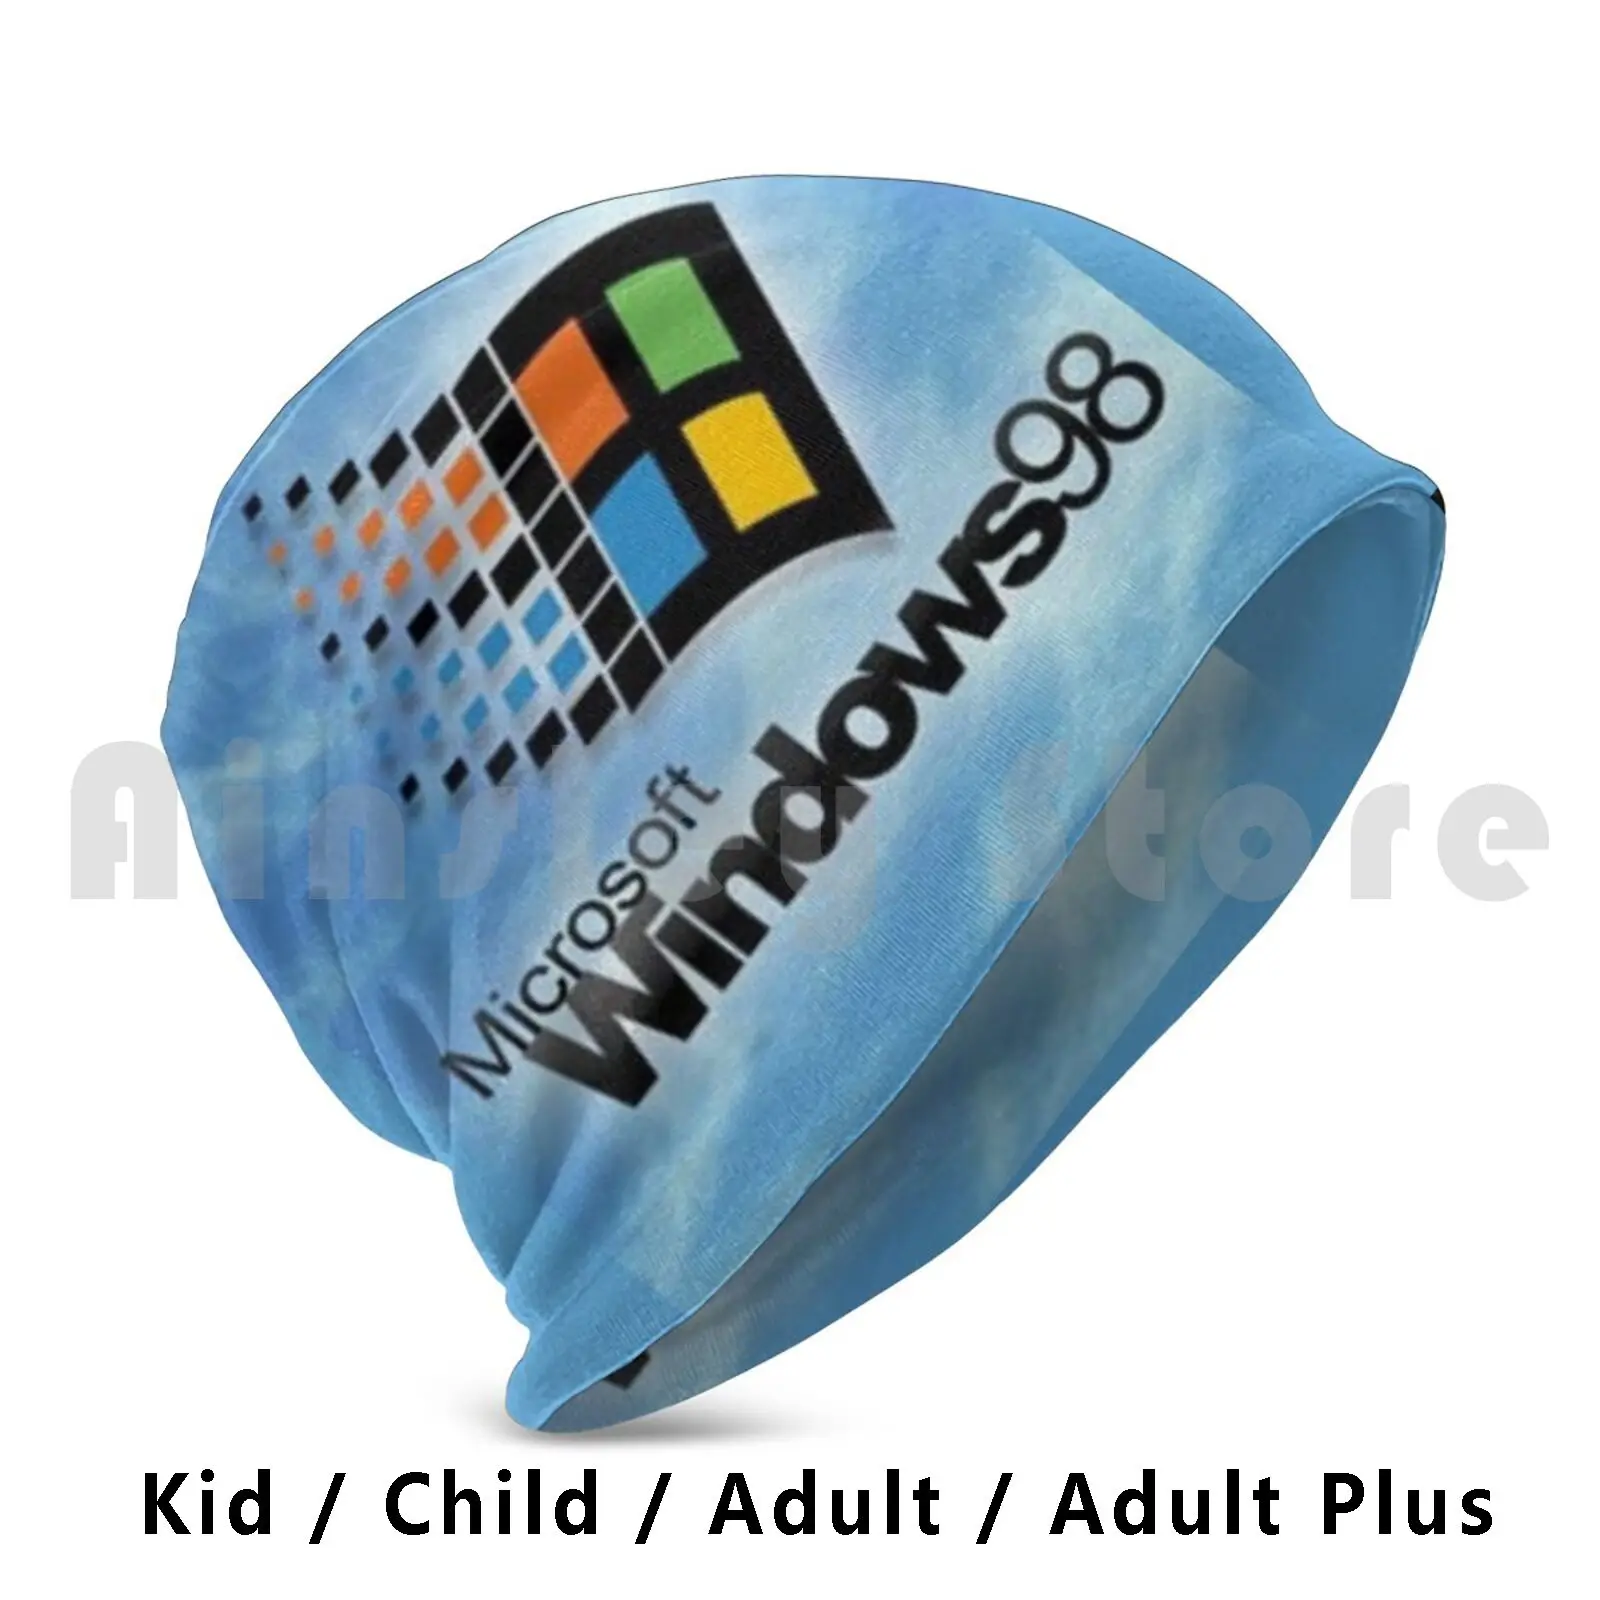 

Облегающие шапки на Windows 98, Удобная шапка-пуловер на Windows 98, Windows, Microsoft, Стив, Jobs, Windows10, технология, Билл Гейтс